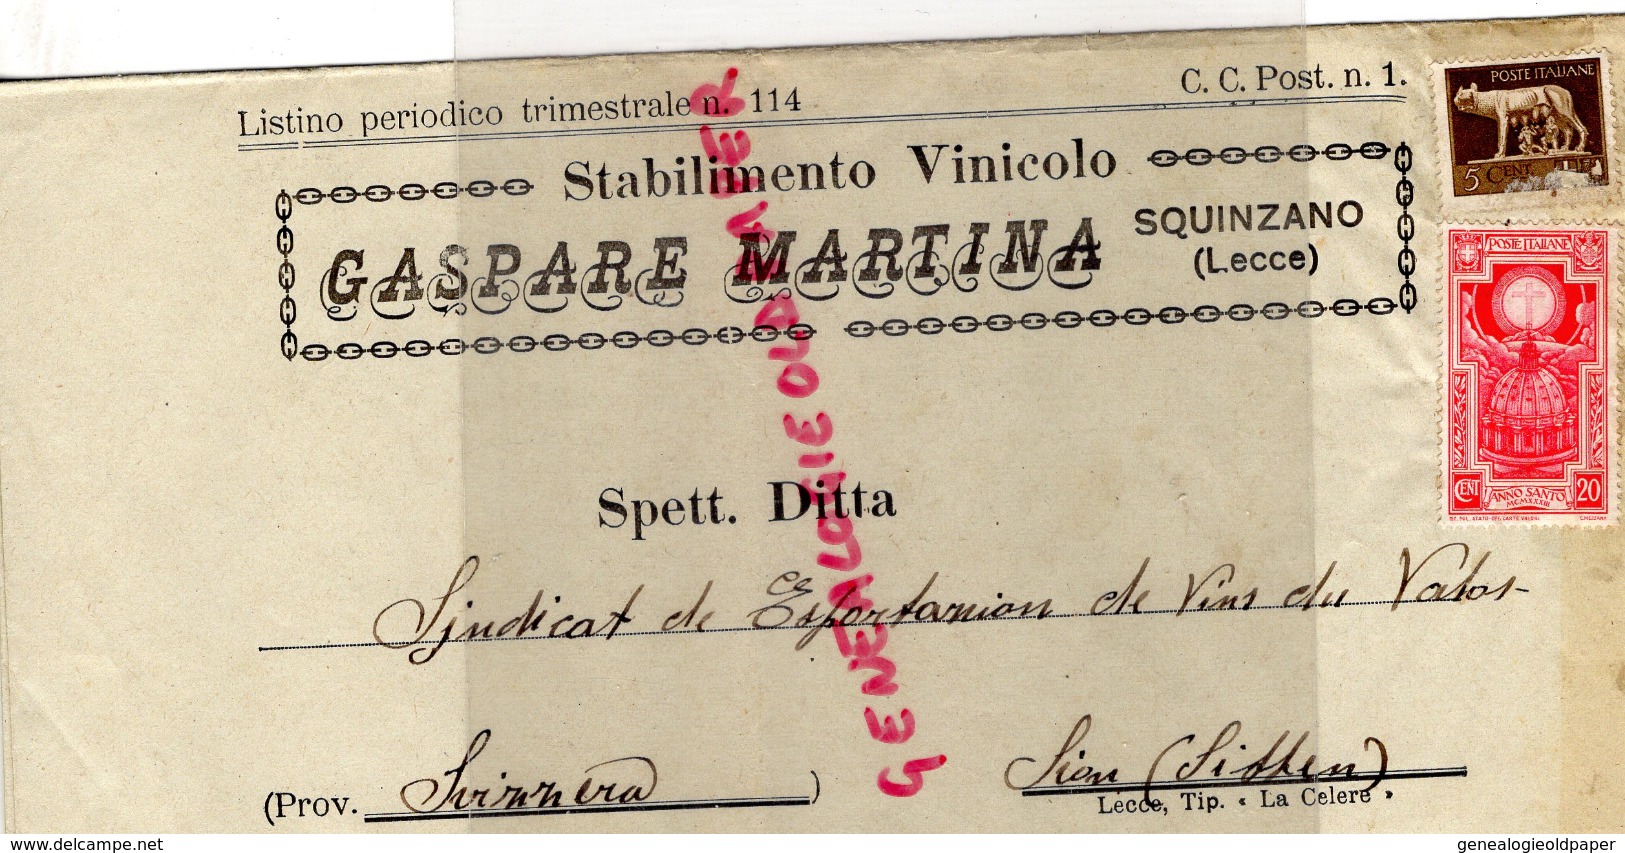 ITALIE - BELLE LETTRE FACTURE - GASPARE MARTINA-SQUINZANO ( LECCE ) UVE VINI- 1933- VINOCOLO - Italie